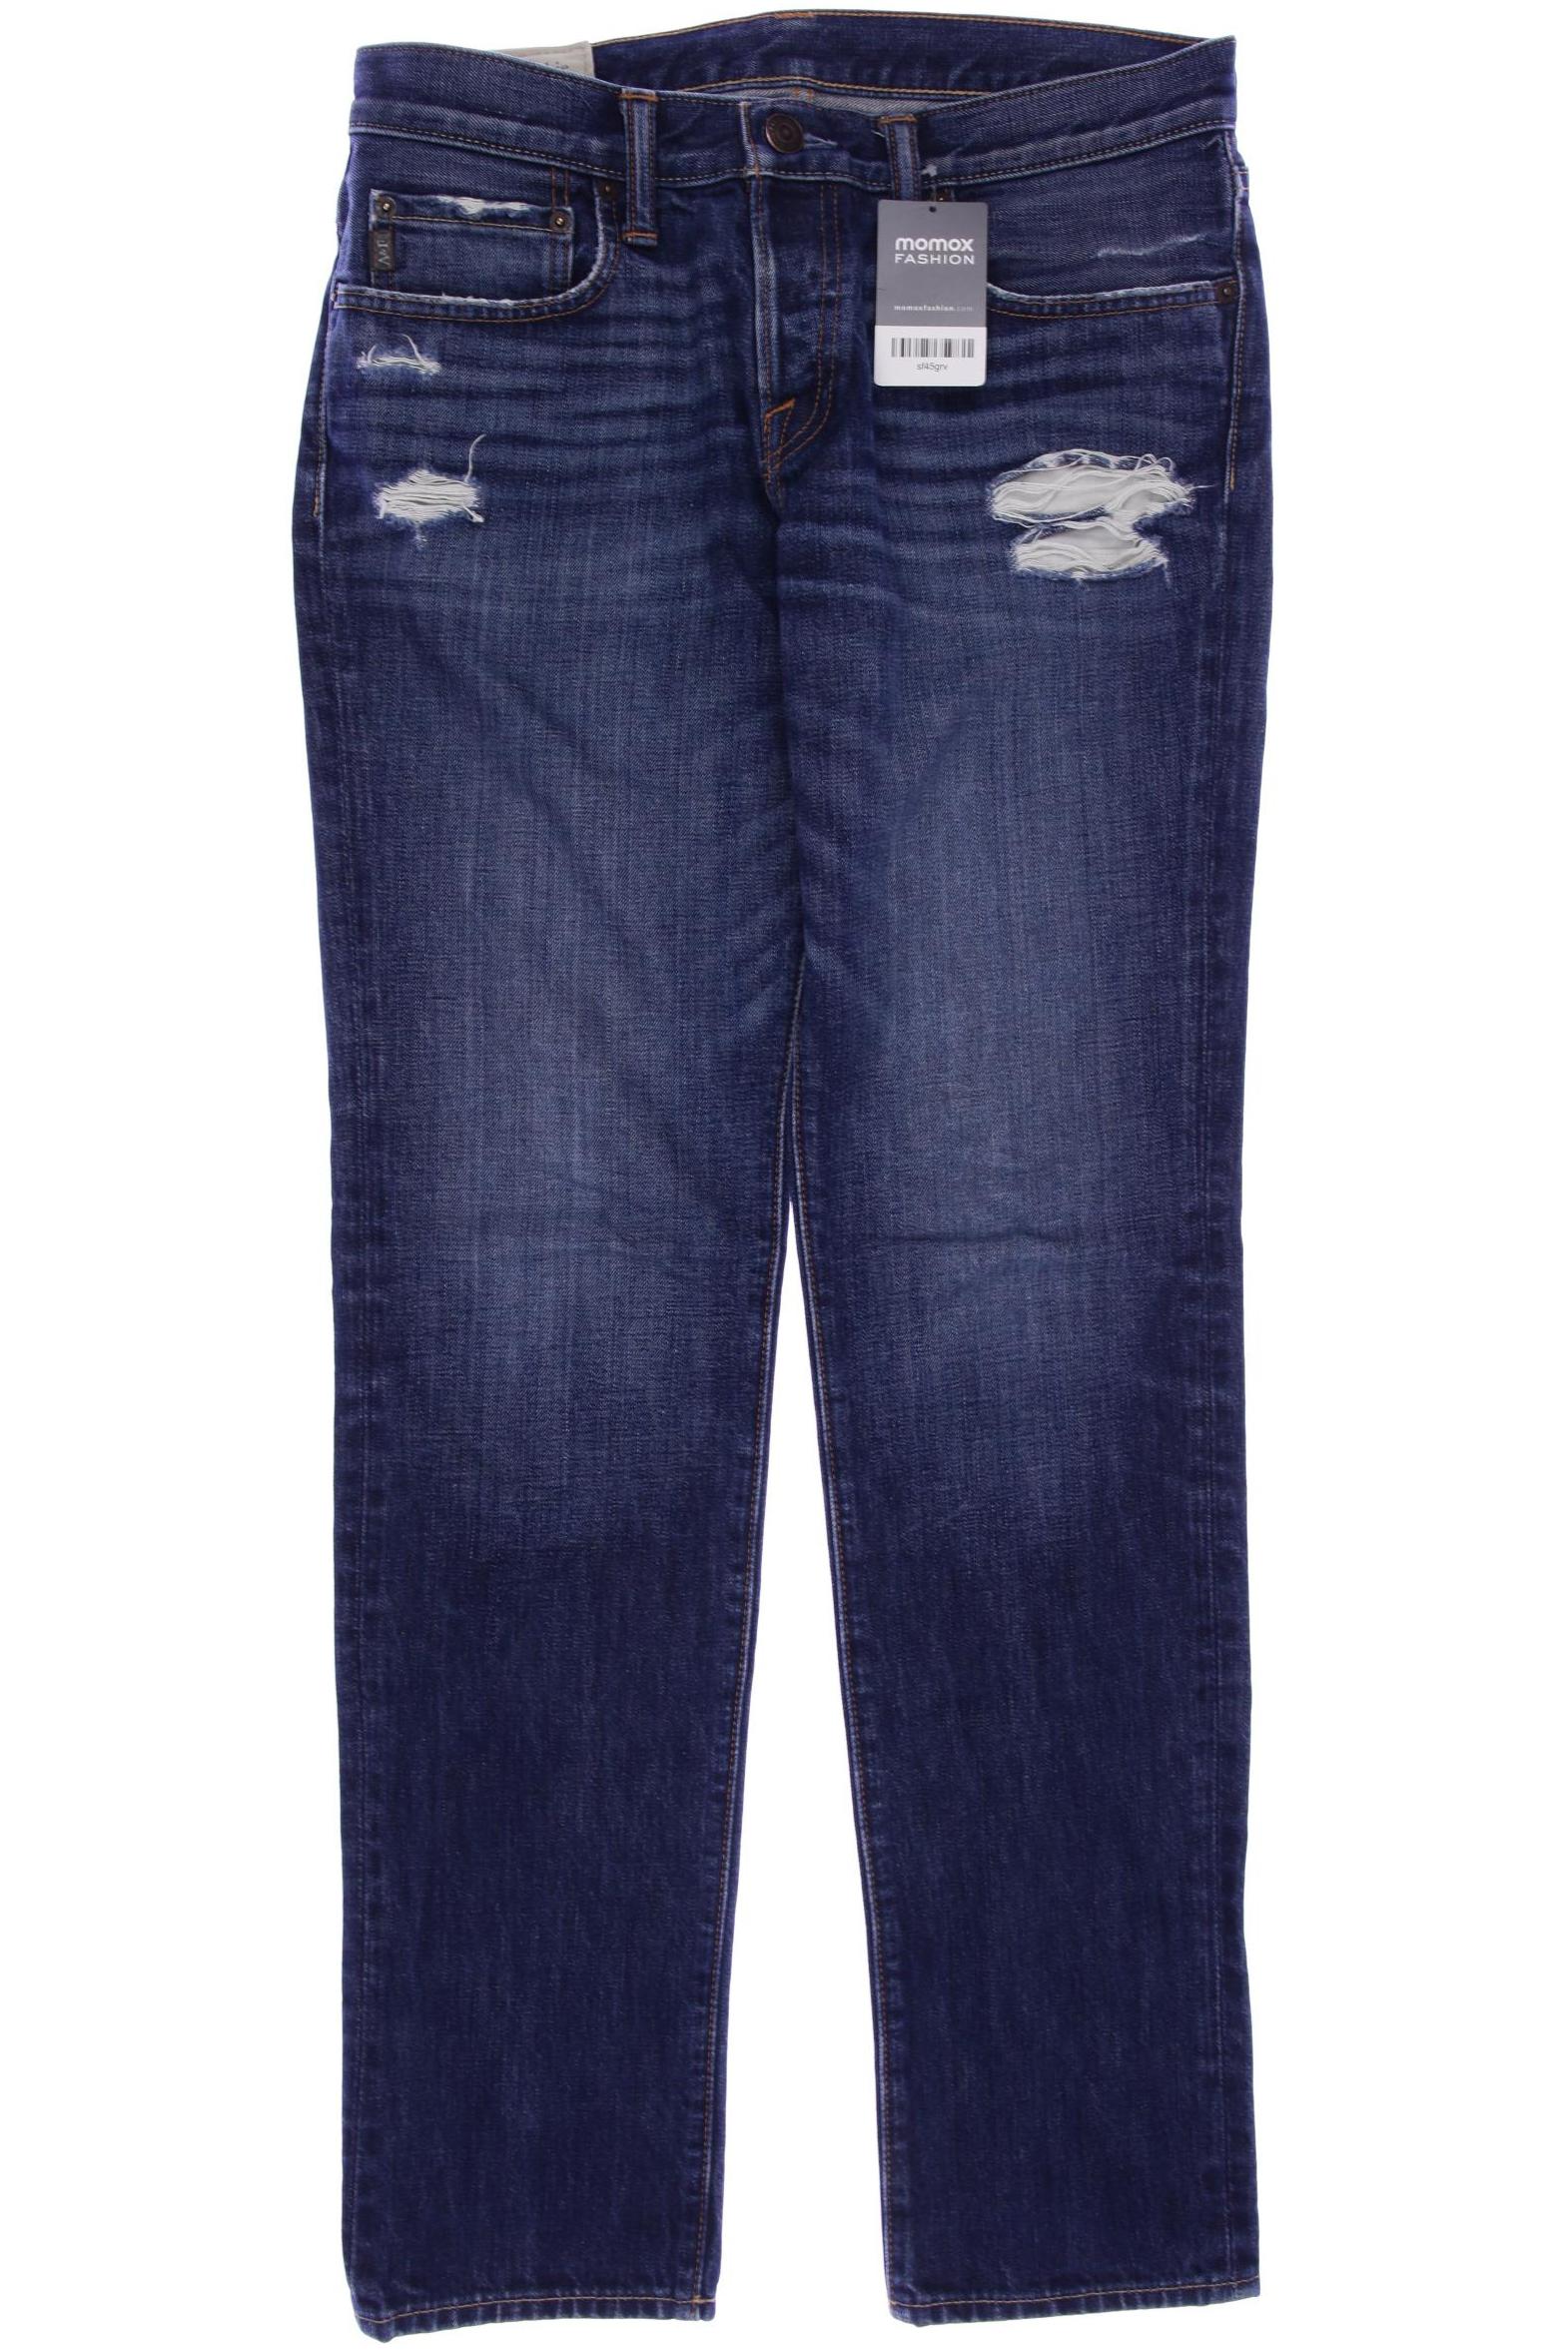 Abercrombie & Fitch Herren Jeans, blau von Abercrombie & Fitch